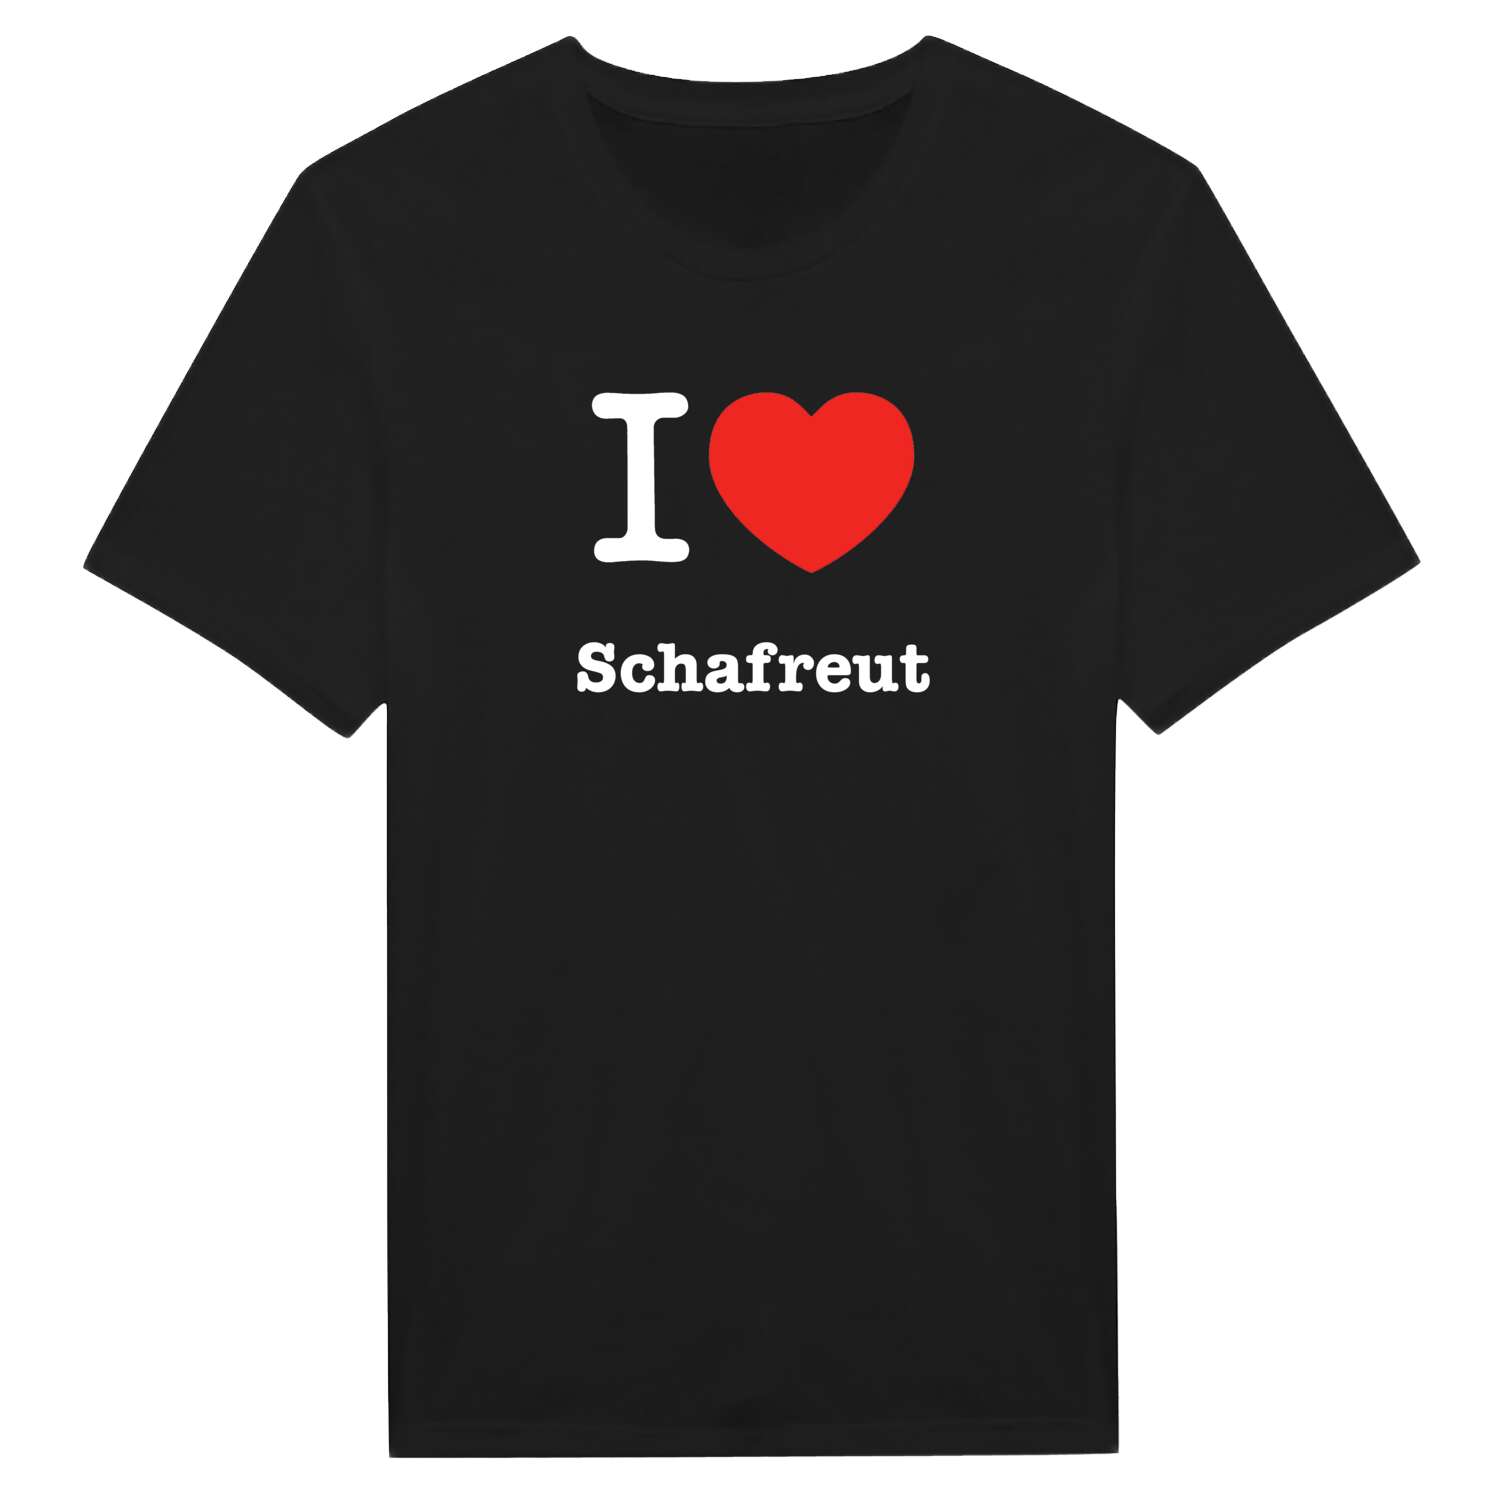 Schafreut T-Shirt »I love«